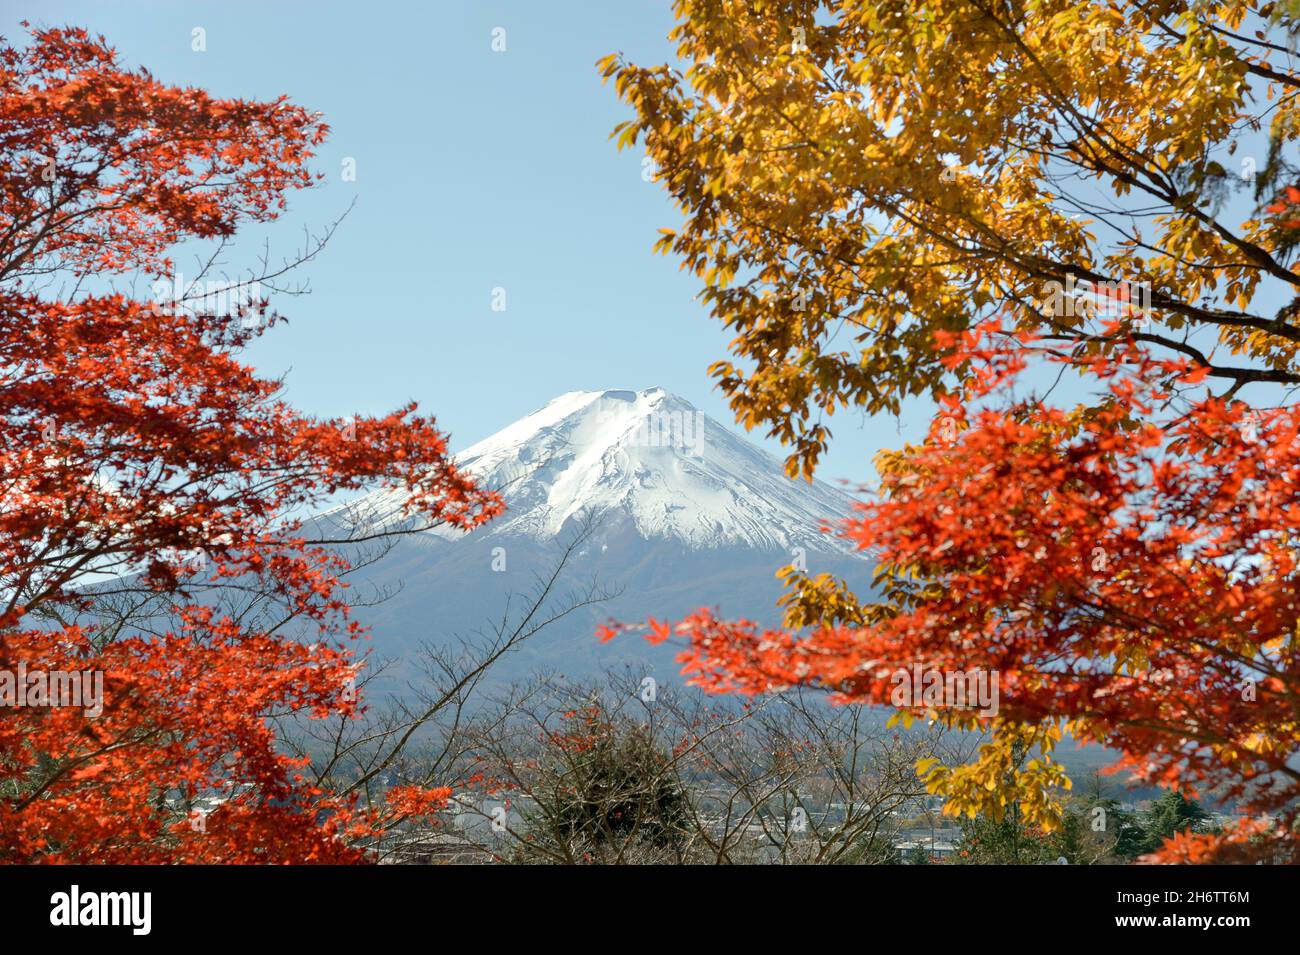 Der schneebedeckte Gipfel des Fuji, der im Herbst gesehen wird, beginnt auf dem Weg zur Chureito-Pagode in der Nähe von Shimoyoshida in der Präfektur Yamanashi, Japan. Stockfoto